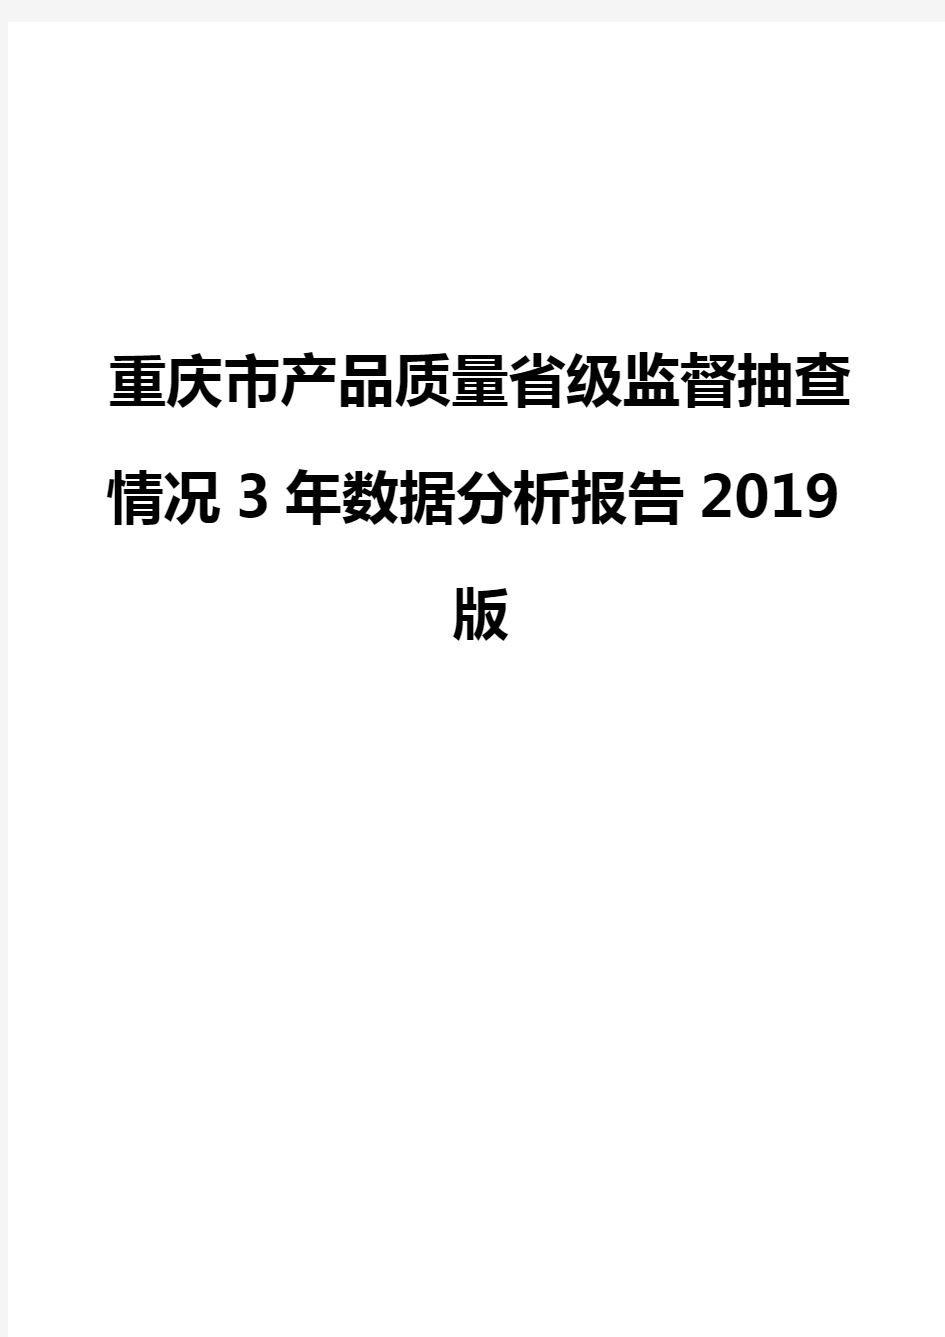 重庆市产品质量省级监督抽查情况3年数据分析报告2019版